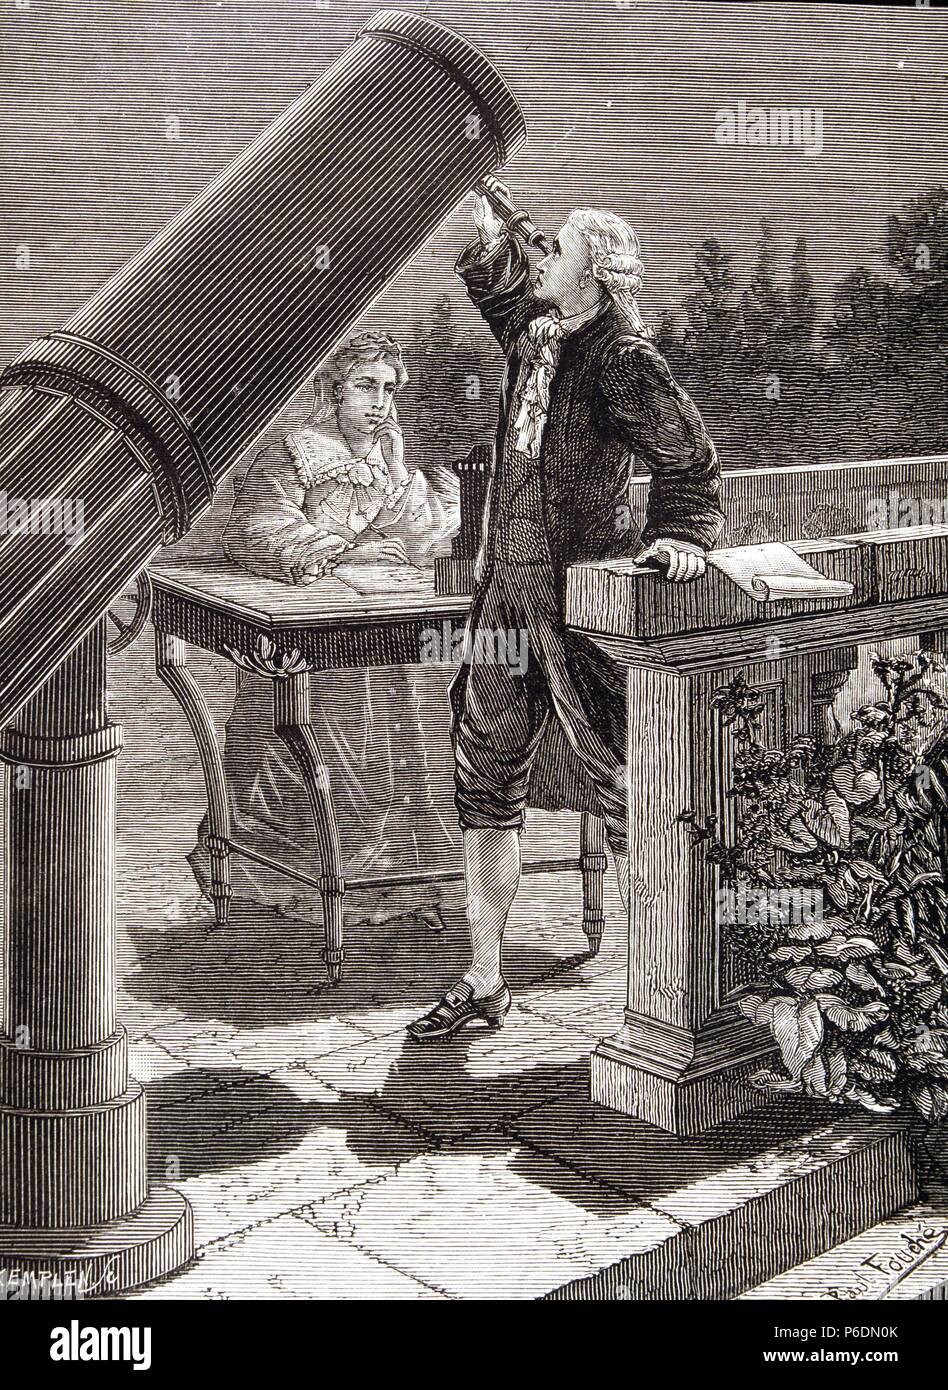 WILLIAN HERSCHEL. ASTRONOMO BRITANICO.1738 - 1822. GRABADO DEL LIBRO ' ASTRONOMIE POPULAIRE ' DE CAMILLE FLANMMARION. PARIS 1880. Stock Photo